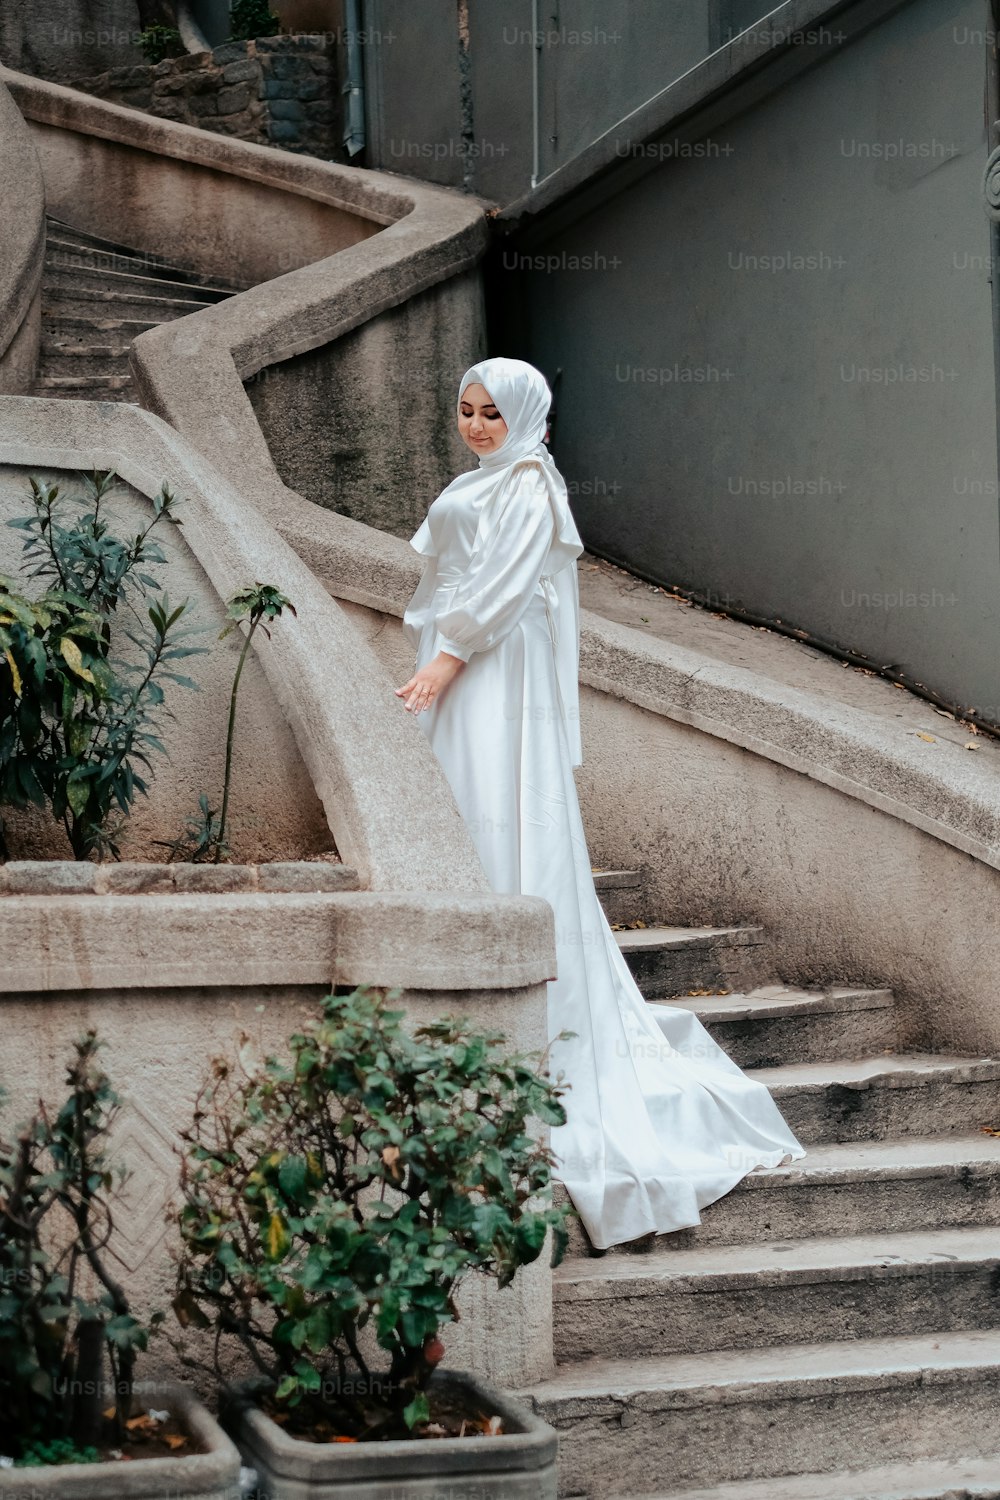 いくつかの階段の上に立つ白いドレスを着た女性